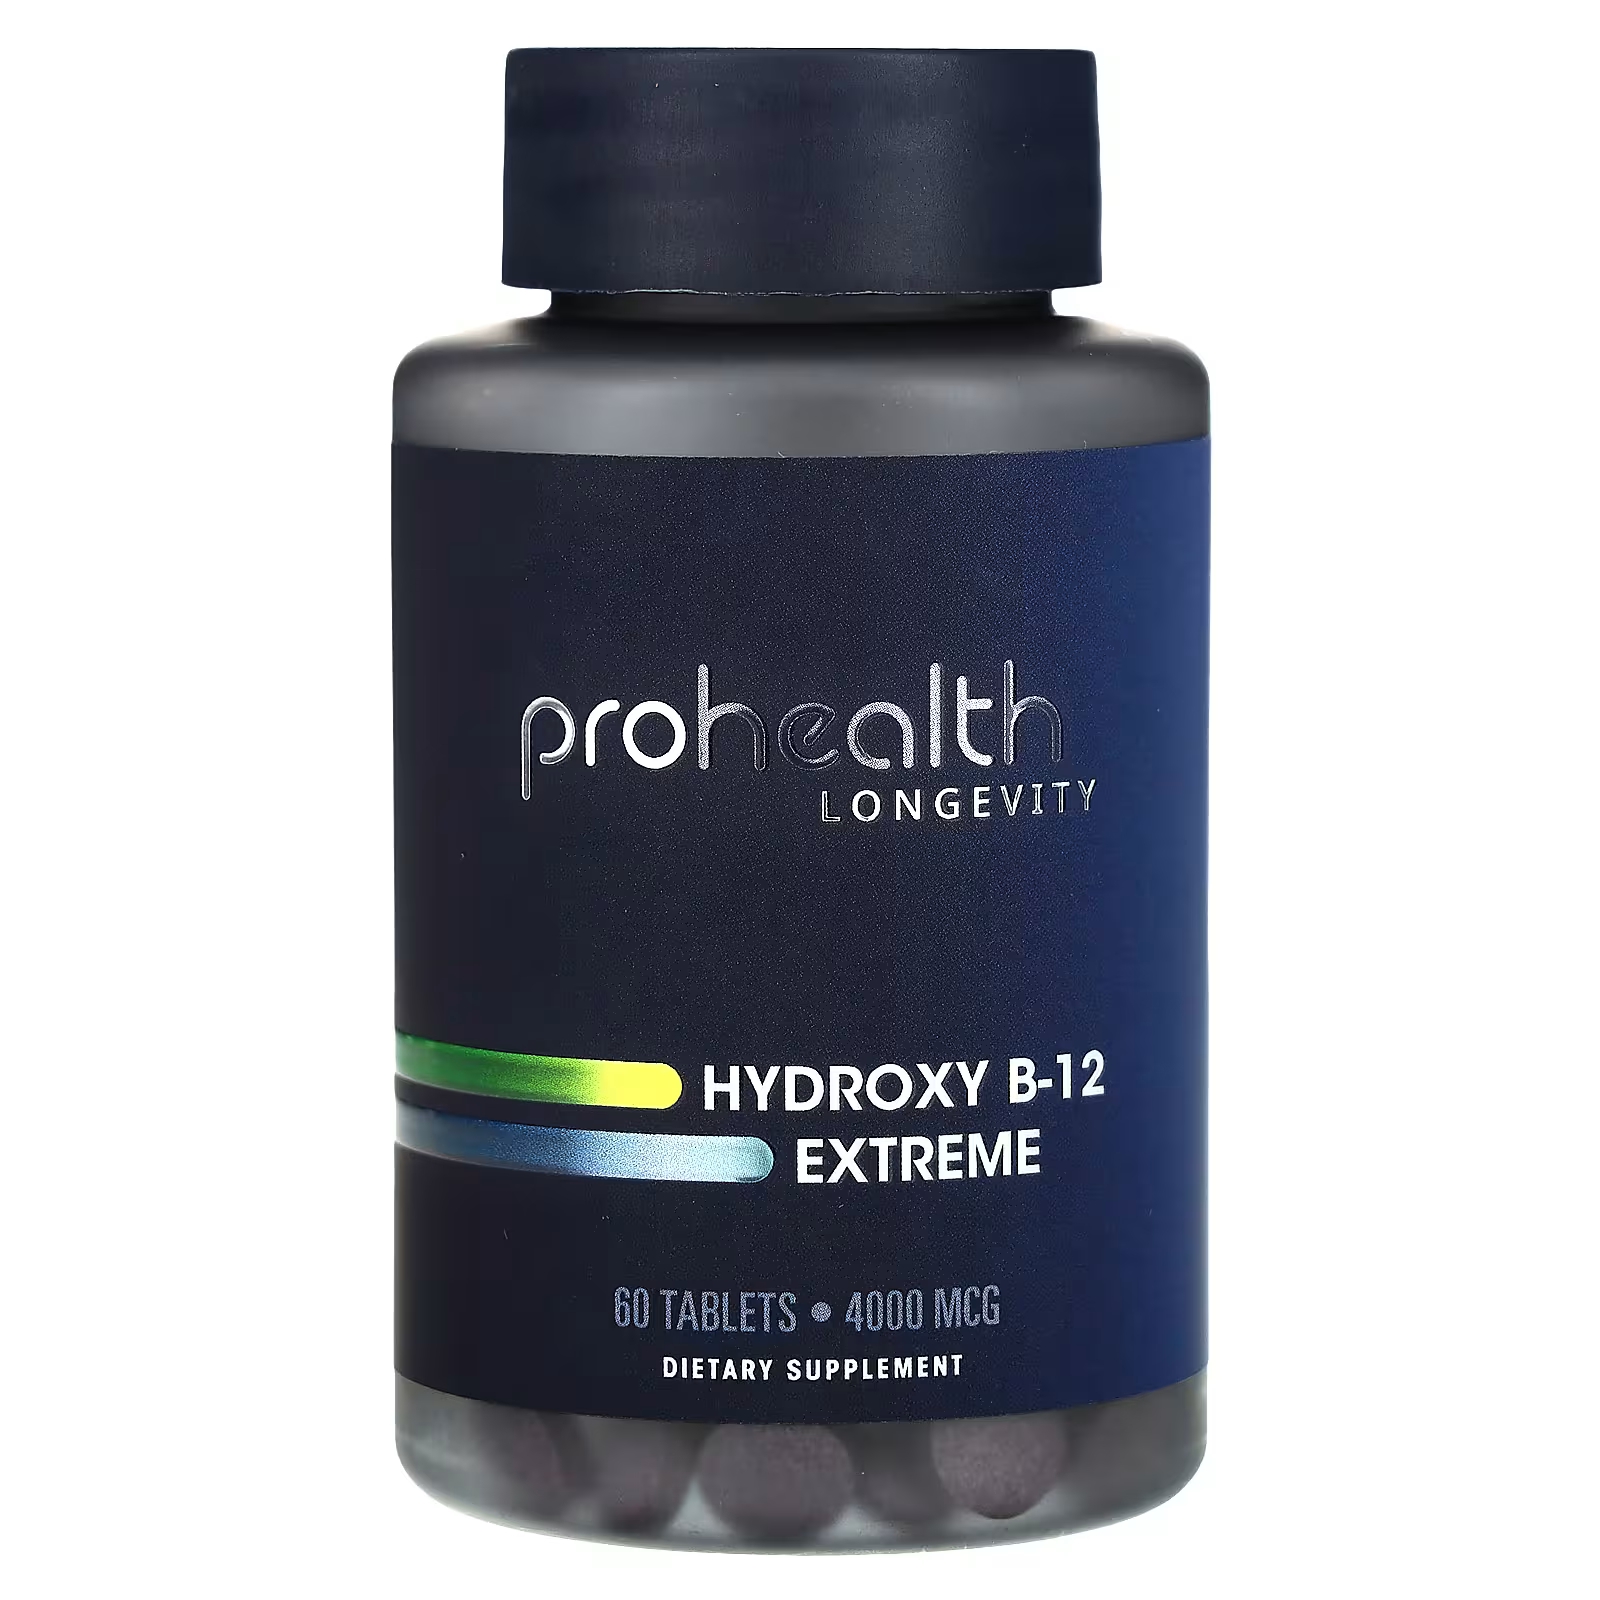 Пищевая добавка ProHealth Longevity Hydroxy B-12 Extreme 4000 мкг, 60 таблеток